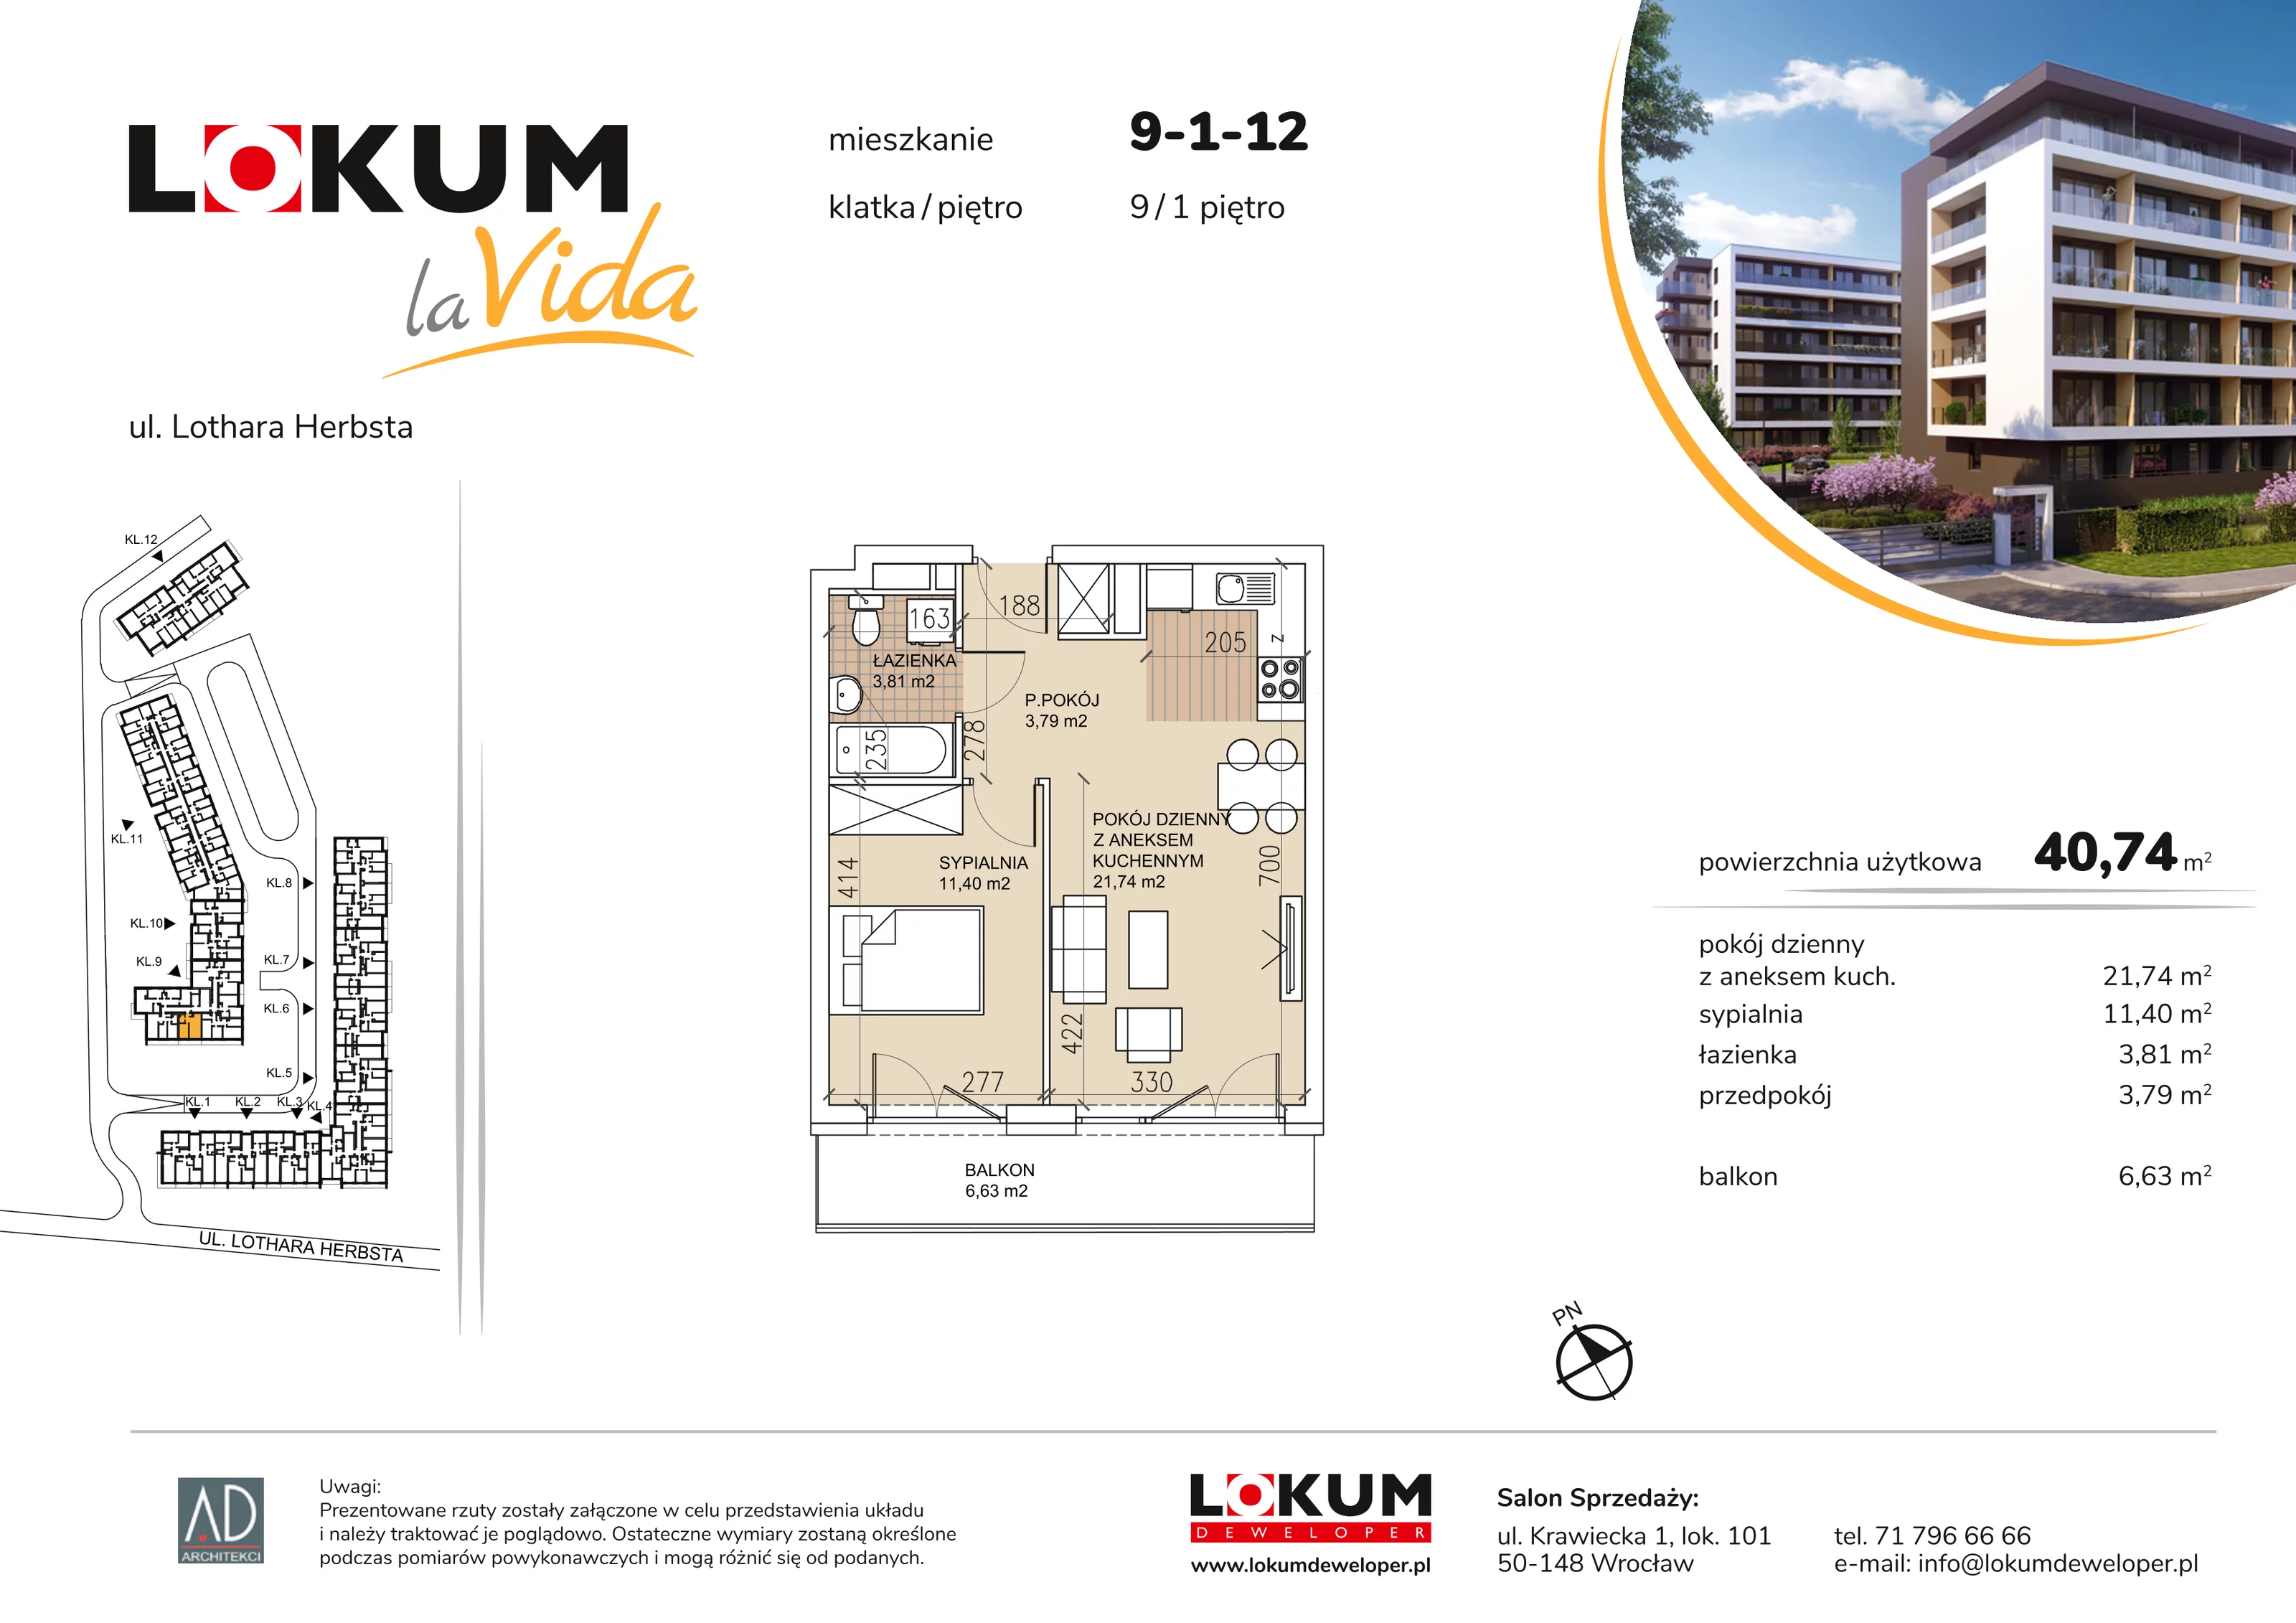 Mieszkanie 40,74 m², piętro 1, oferta nr 9-1-12, Lokum la Vida, Wrocław, Sołtysowice, ul. Lothara Herbsta